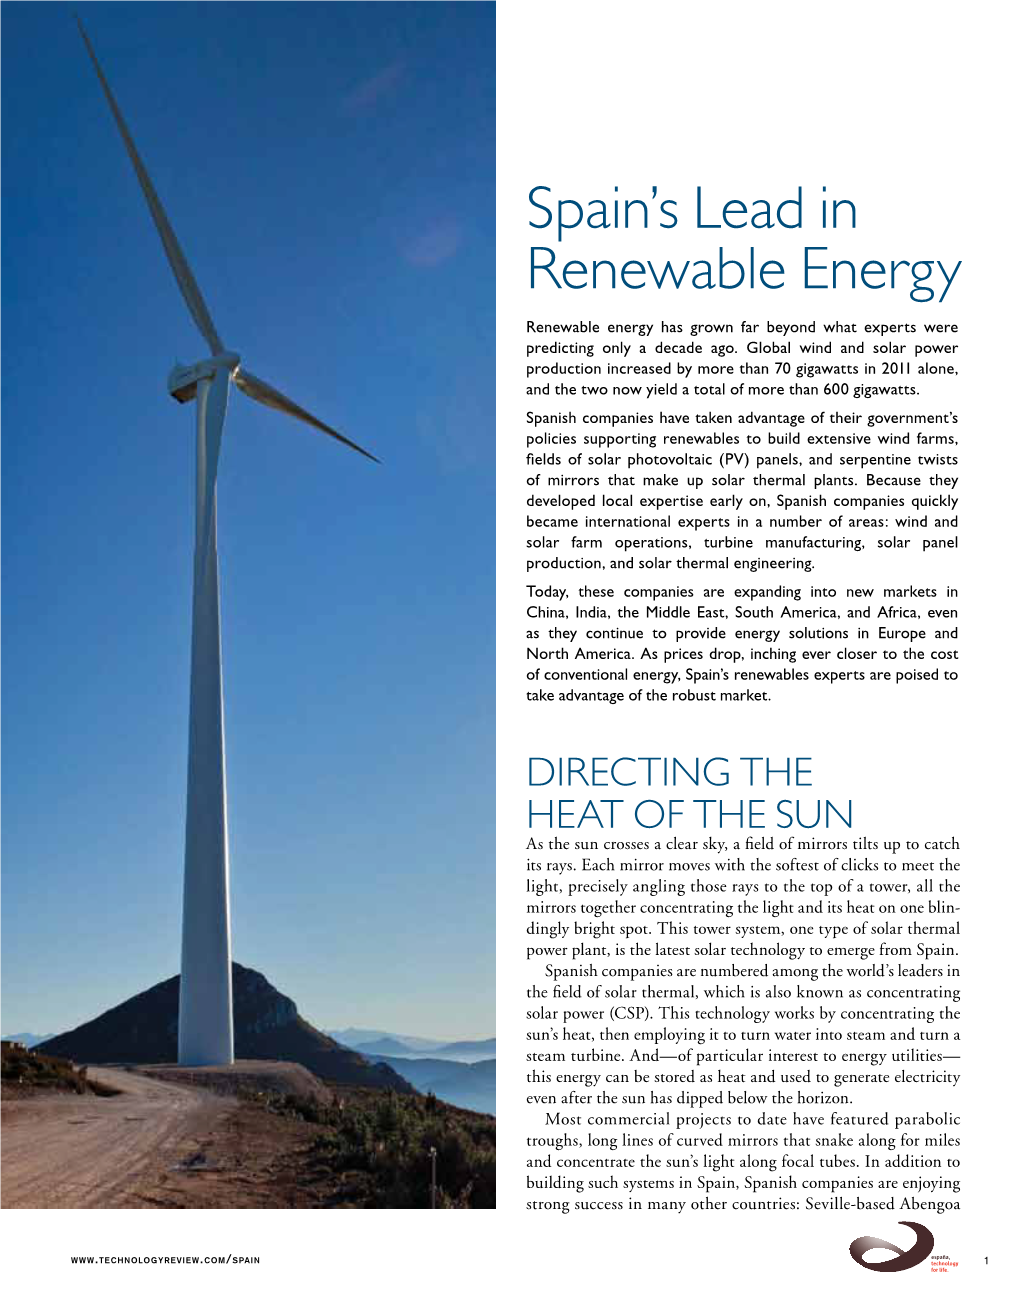 Spain's Lead in Renewable Energy